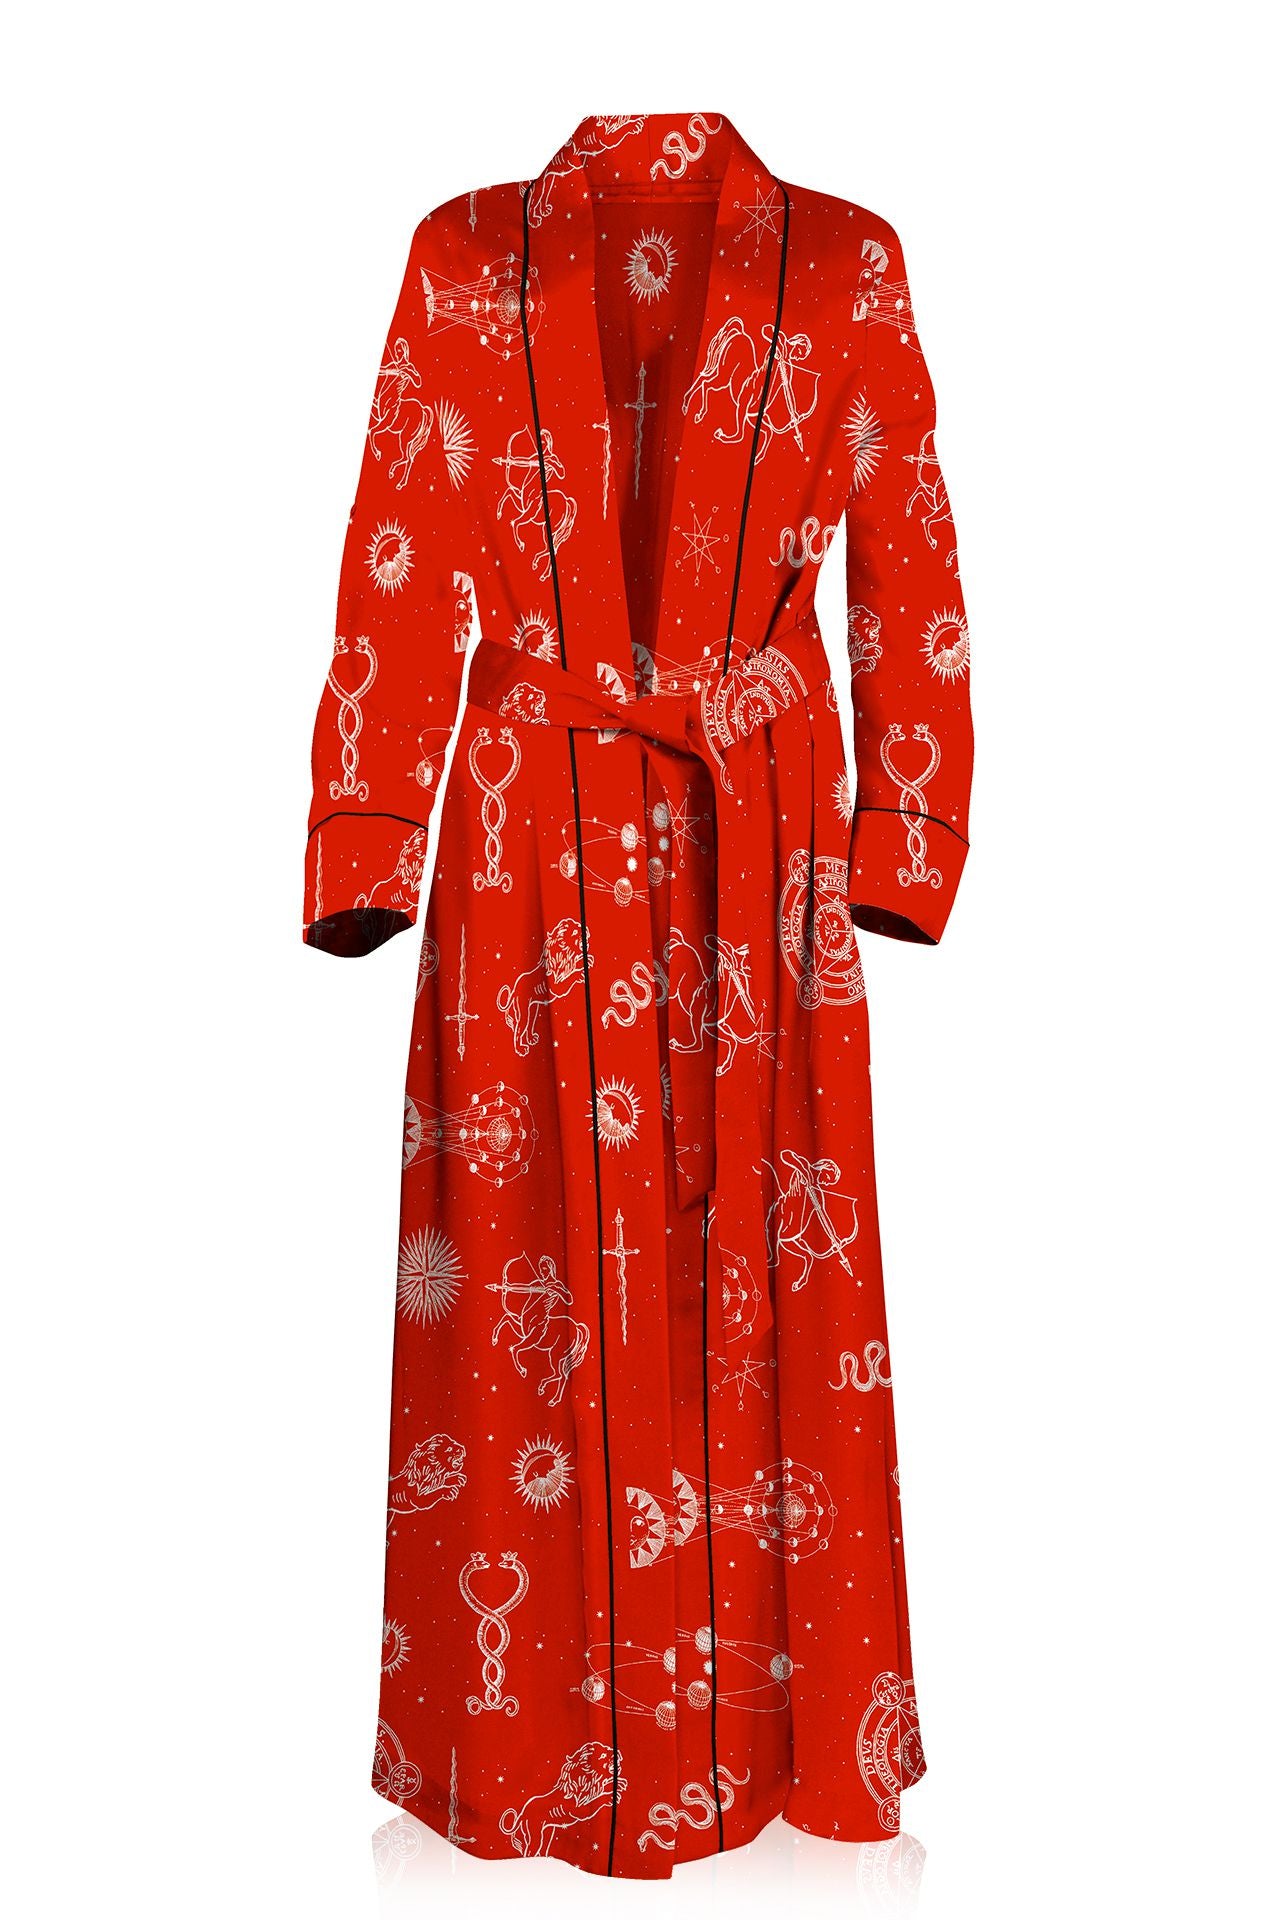 Buy Kimono Dressing Gowns for Women UK- Kimono Robes for Women -Summer Dressing  Gown-Long Satin Silk Pyjamas for Women -Floral Feather Bride Robe  Bridesmaid Pyjamas Lightweight Satin Robe Online at desertcartINDIA